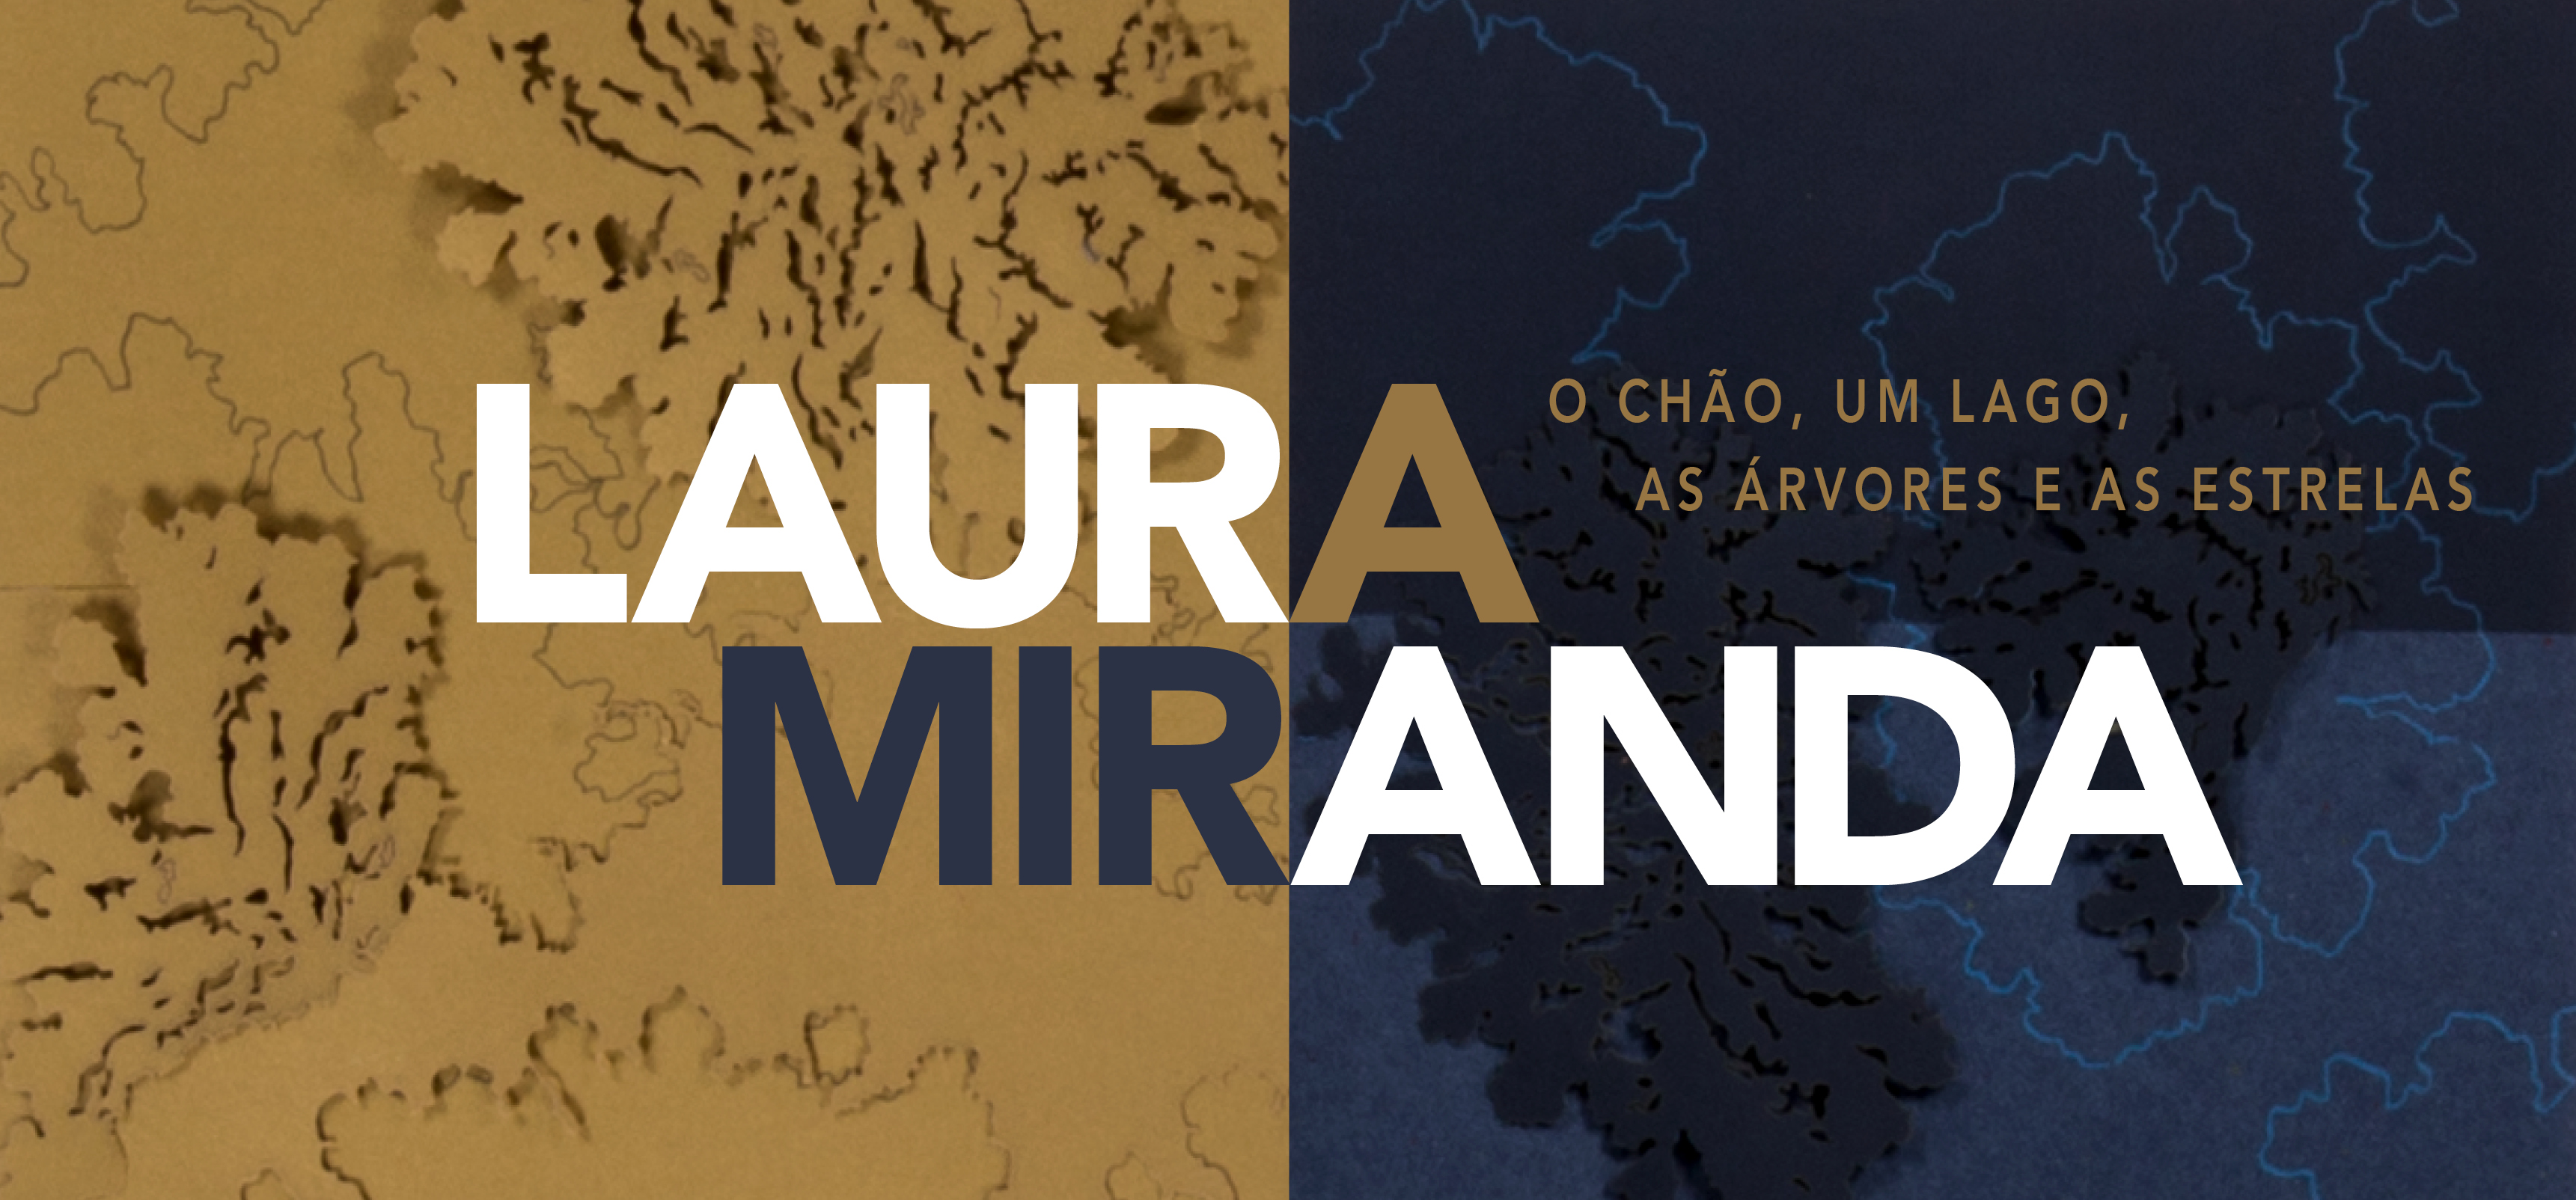 Laura Miranda - O chão, um lago, as árvores e as estrelas